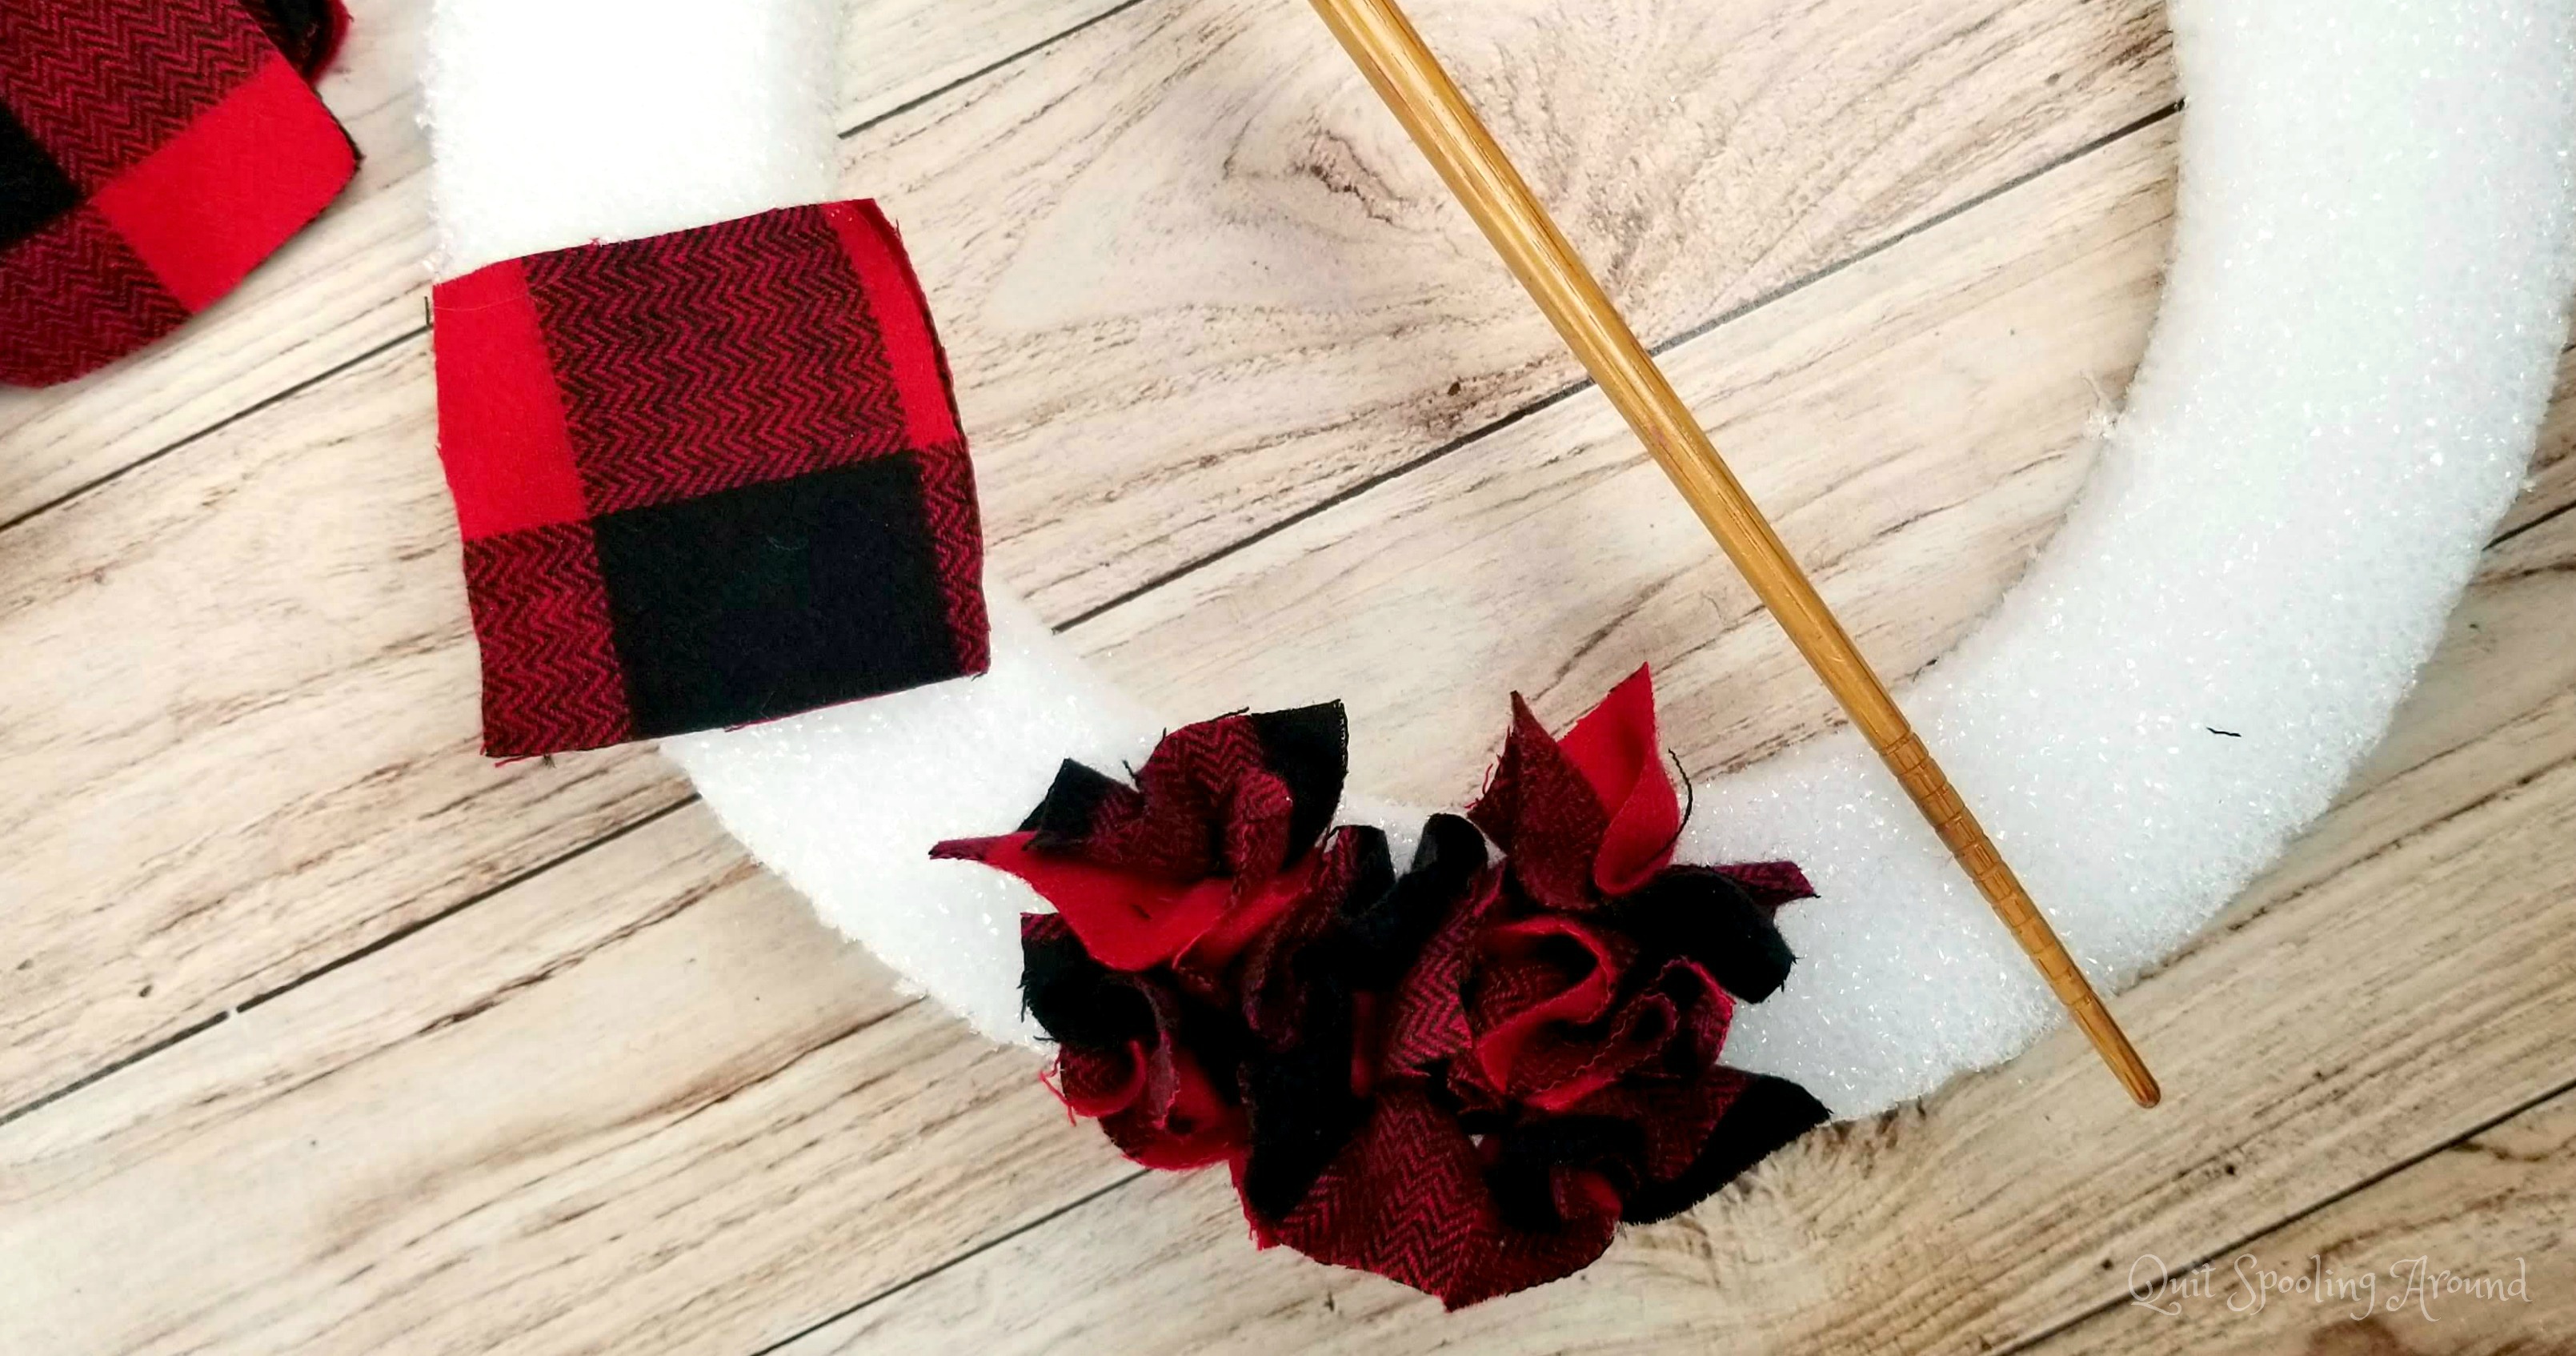 Rag Wreath - add fabric to foam wreath